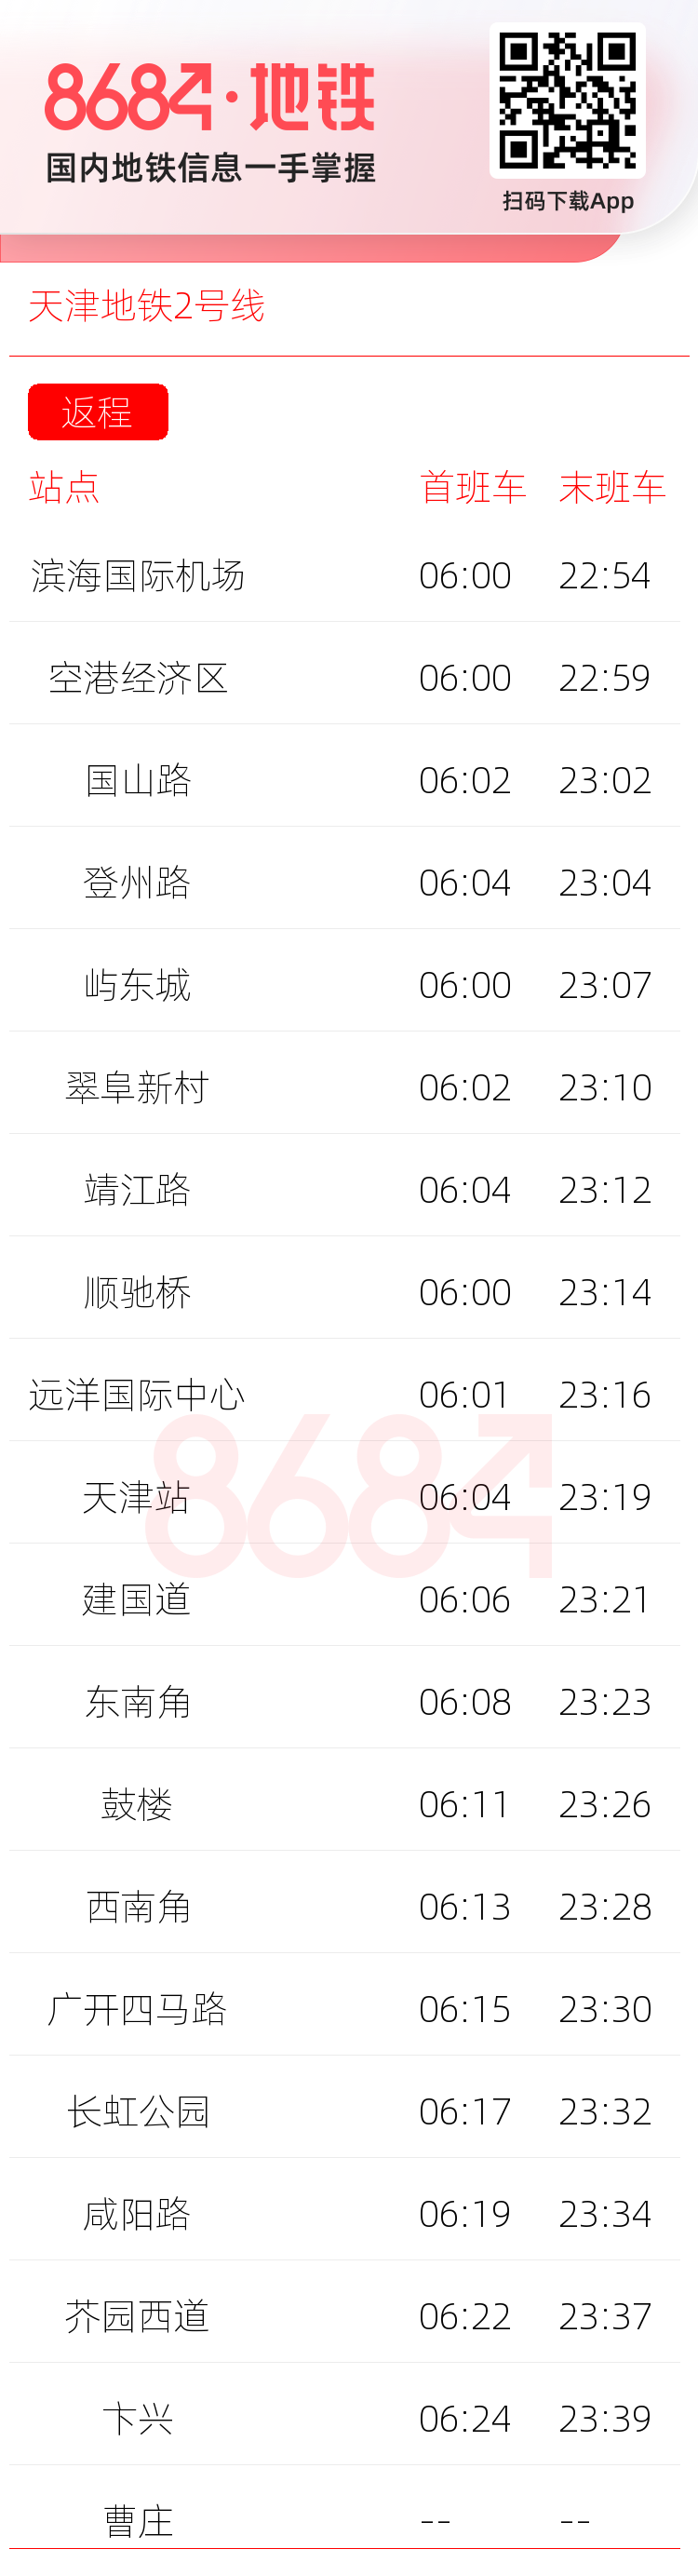 天津地铁2号线运营时间表